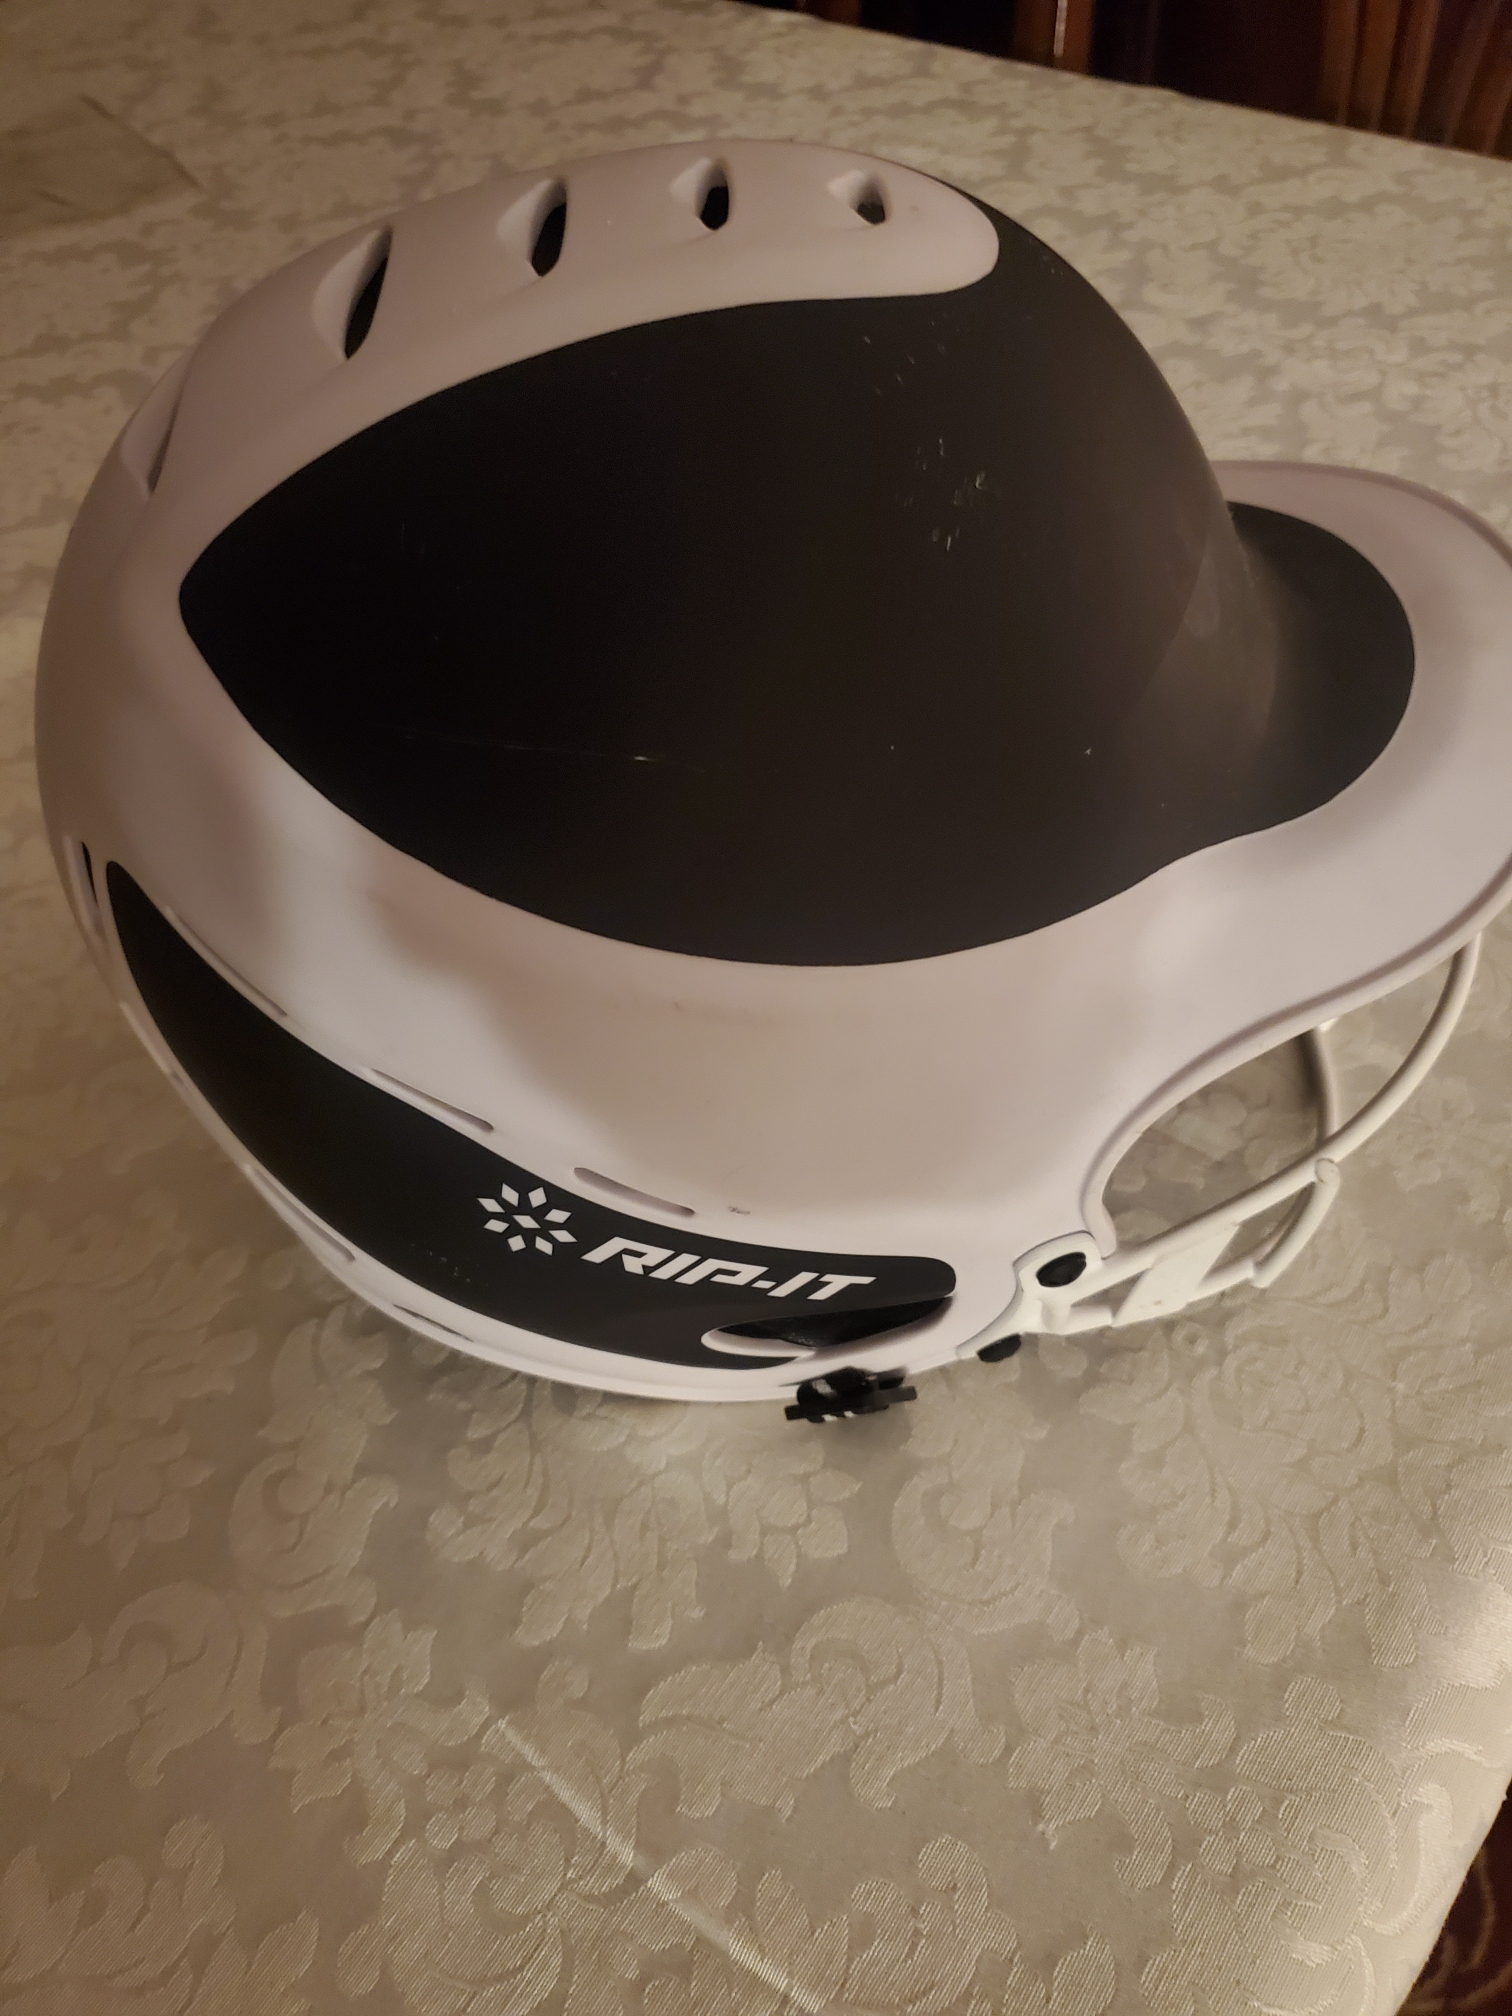 Small / Medium Rip It Batting Helmet